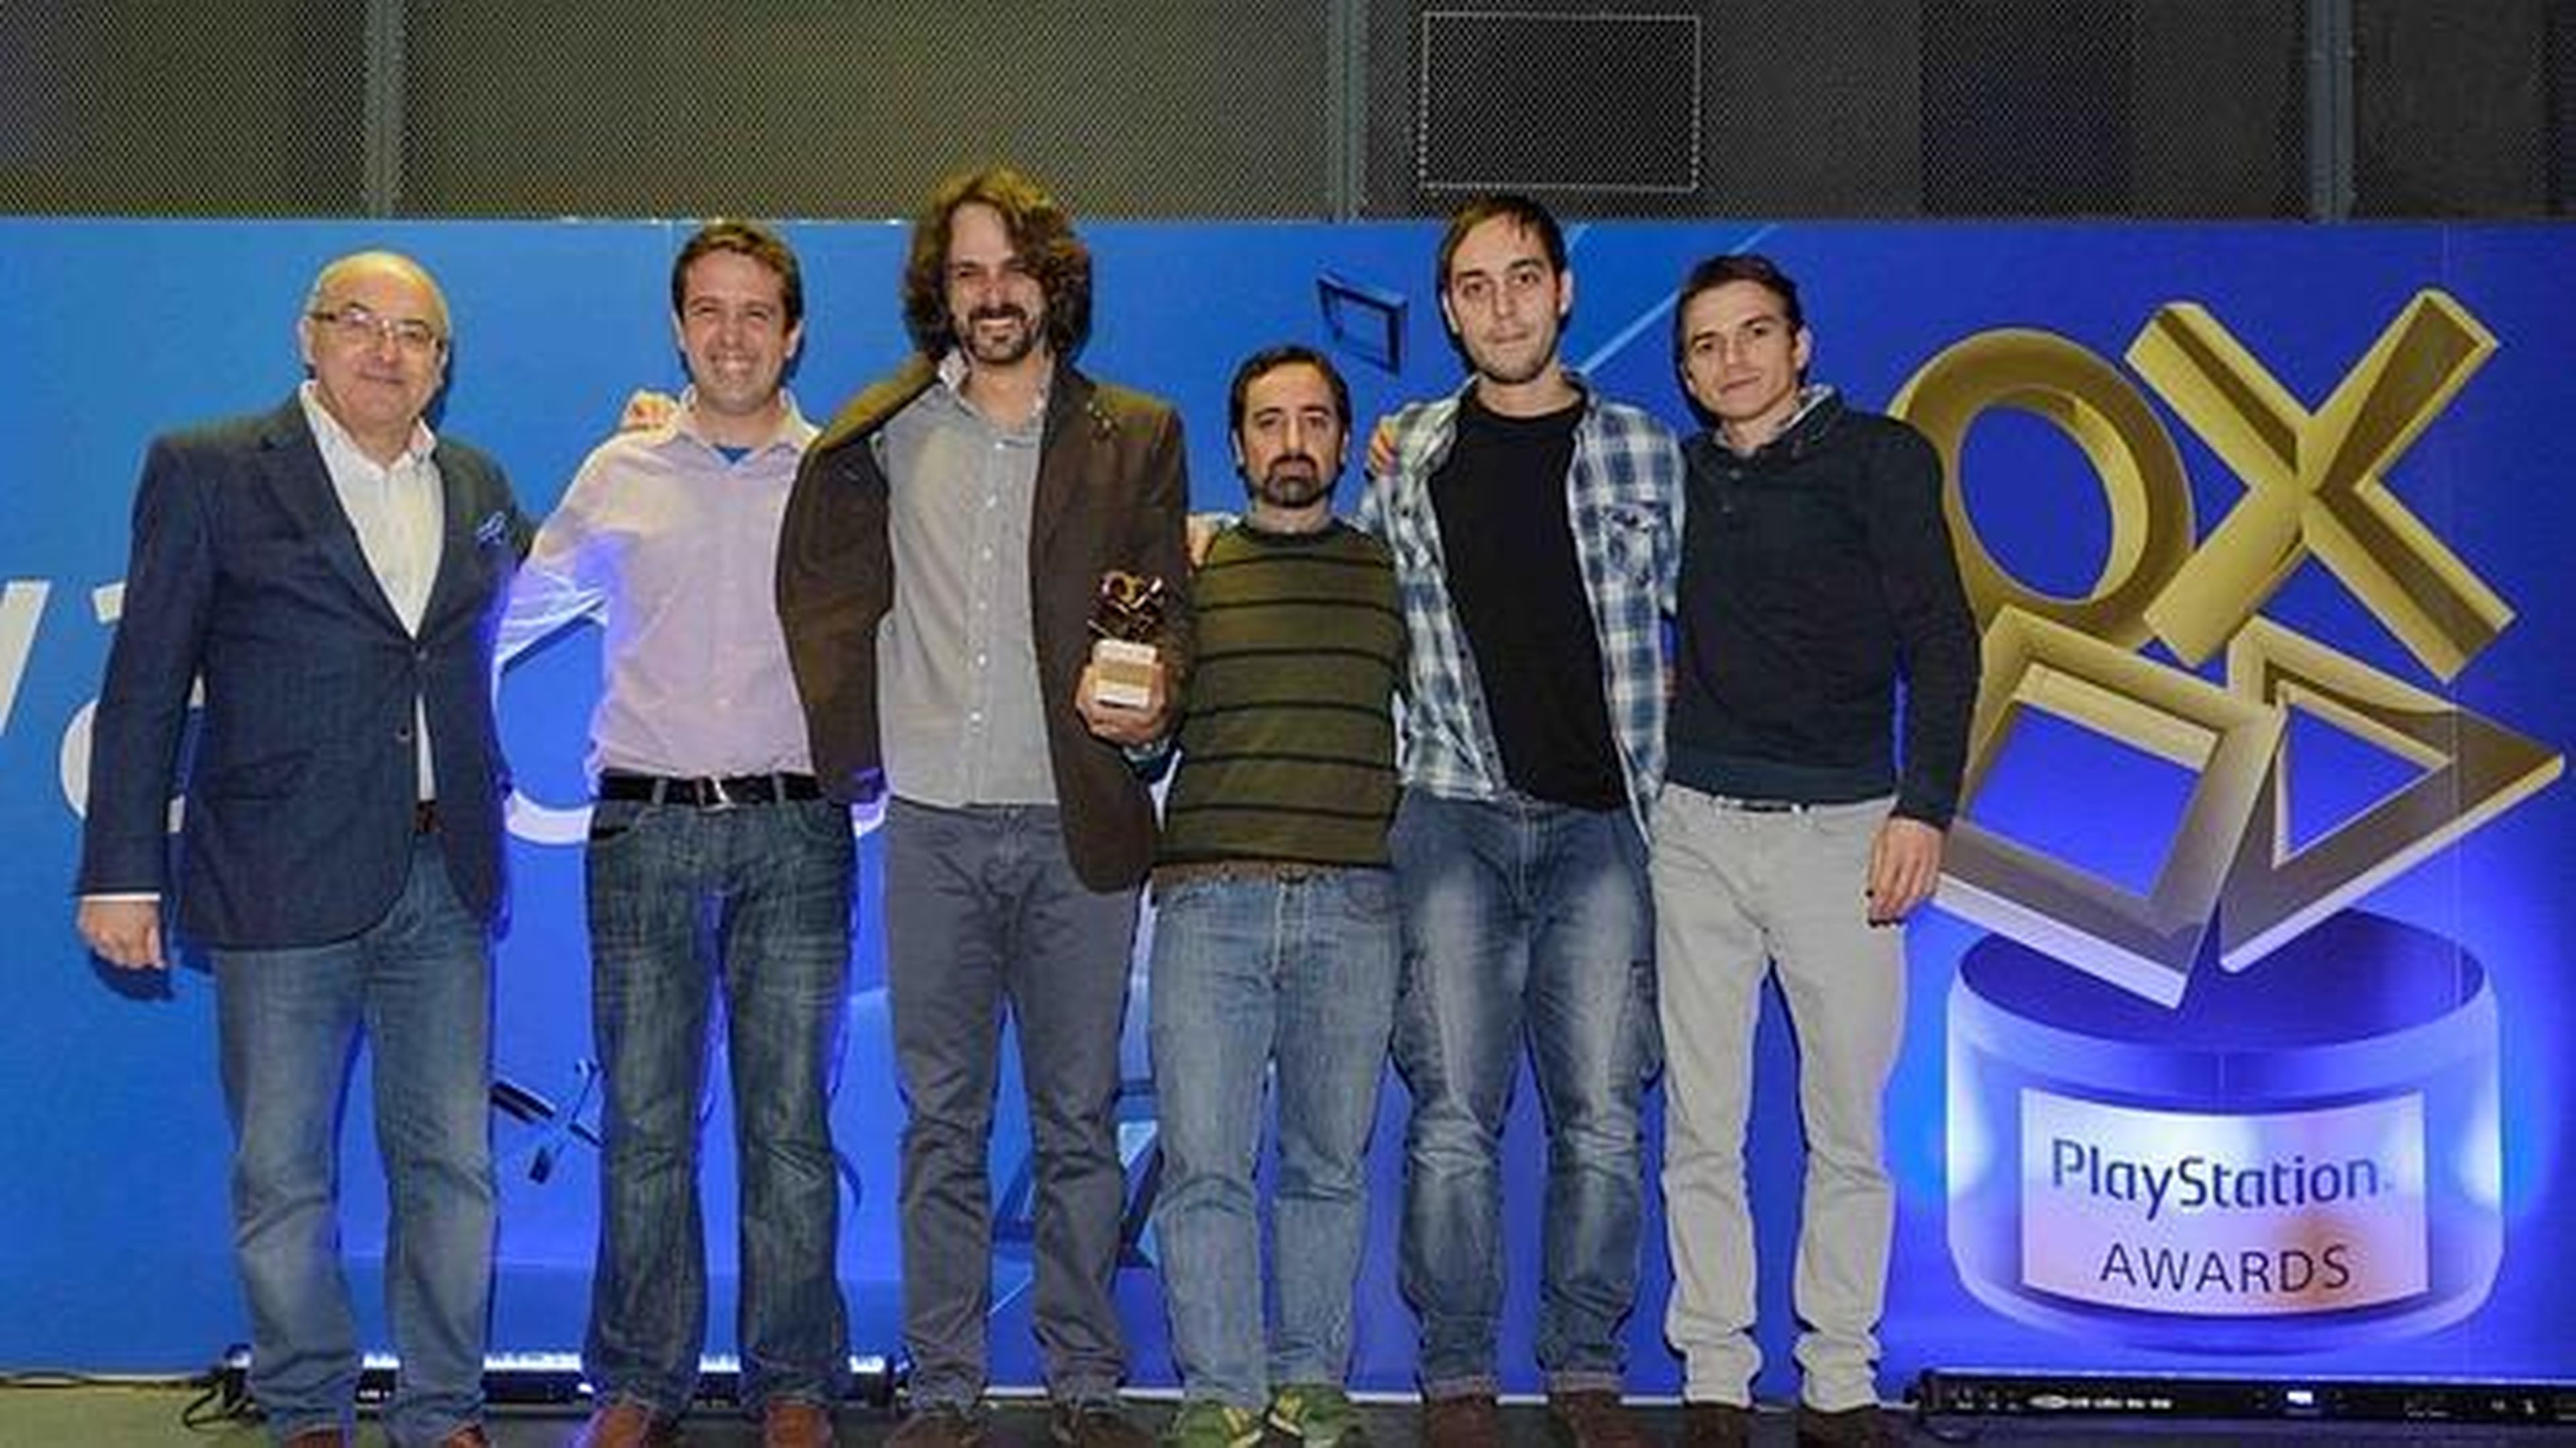 El equipo de Animatoon Studios con su trofeo de ganadores de los I Premios PlayStation, junto a James Armstrong